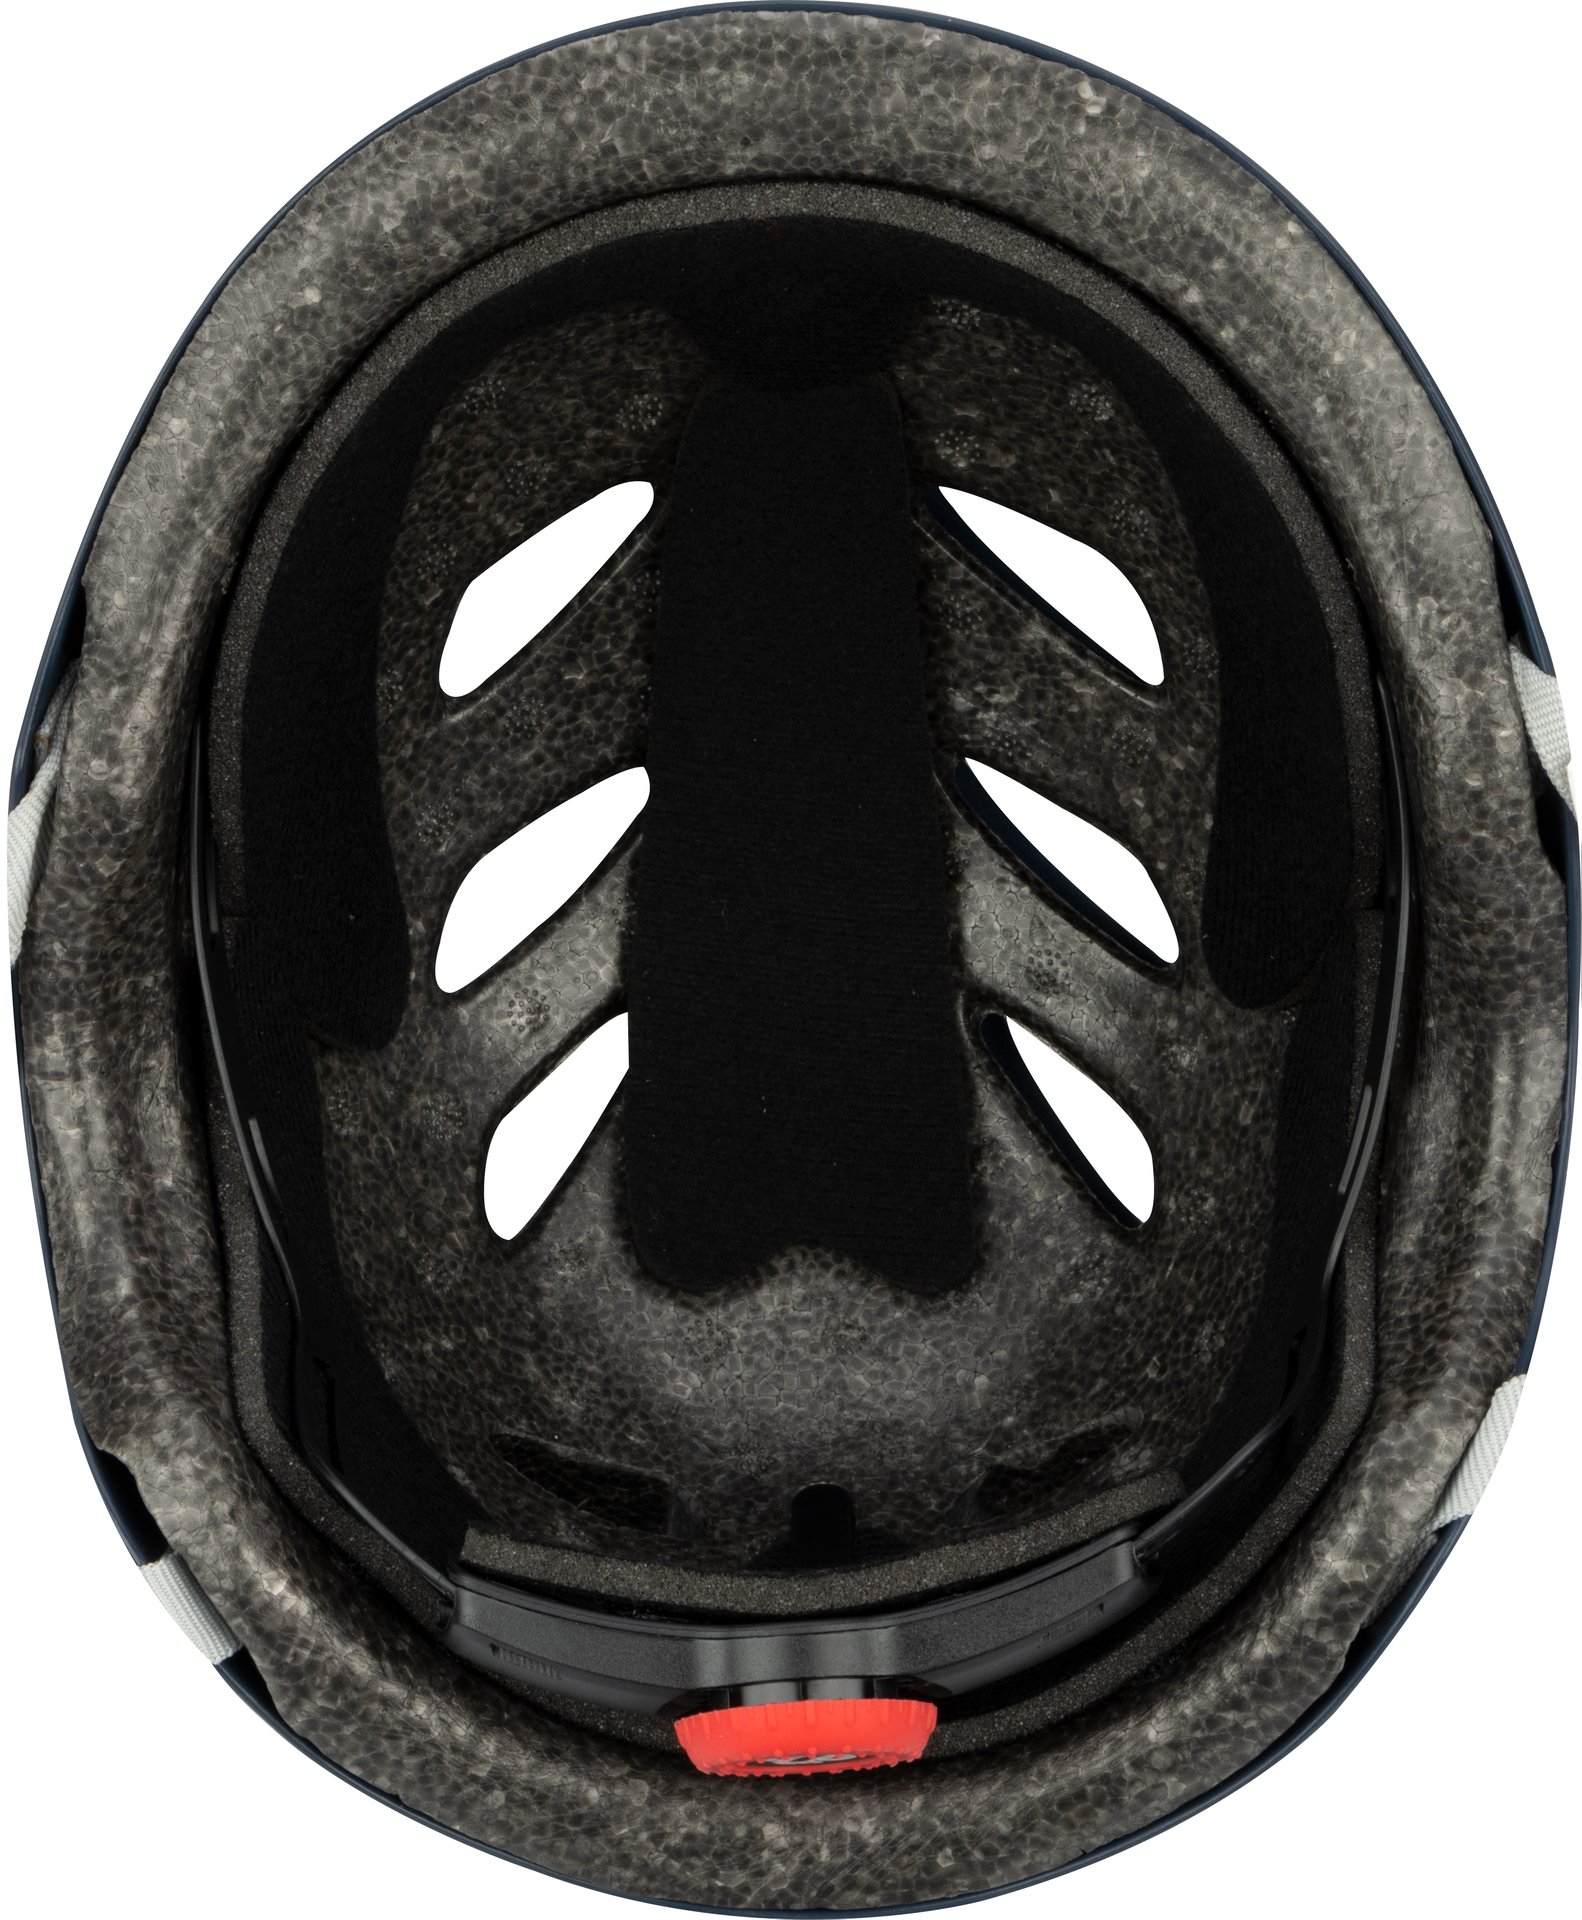 Skate Helmet - Sidewalk Sentinel